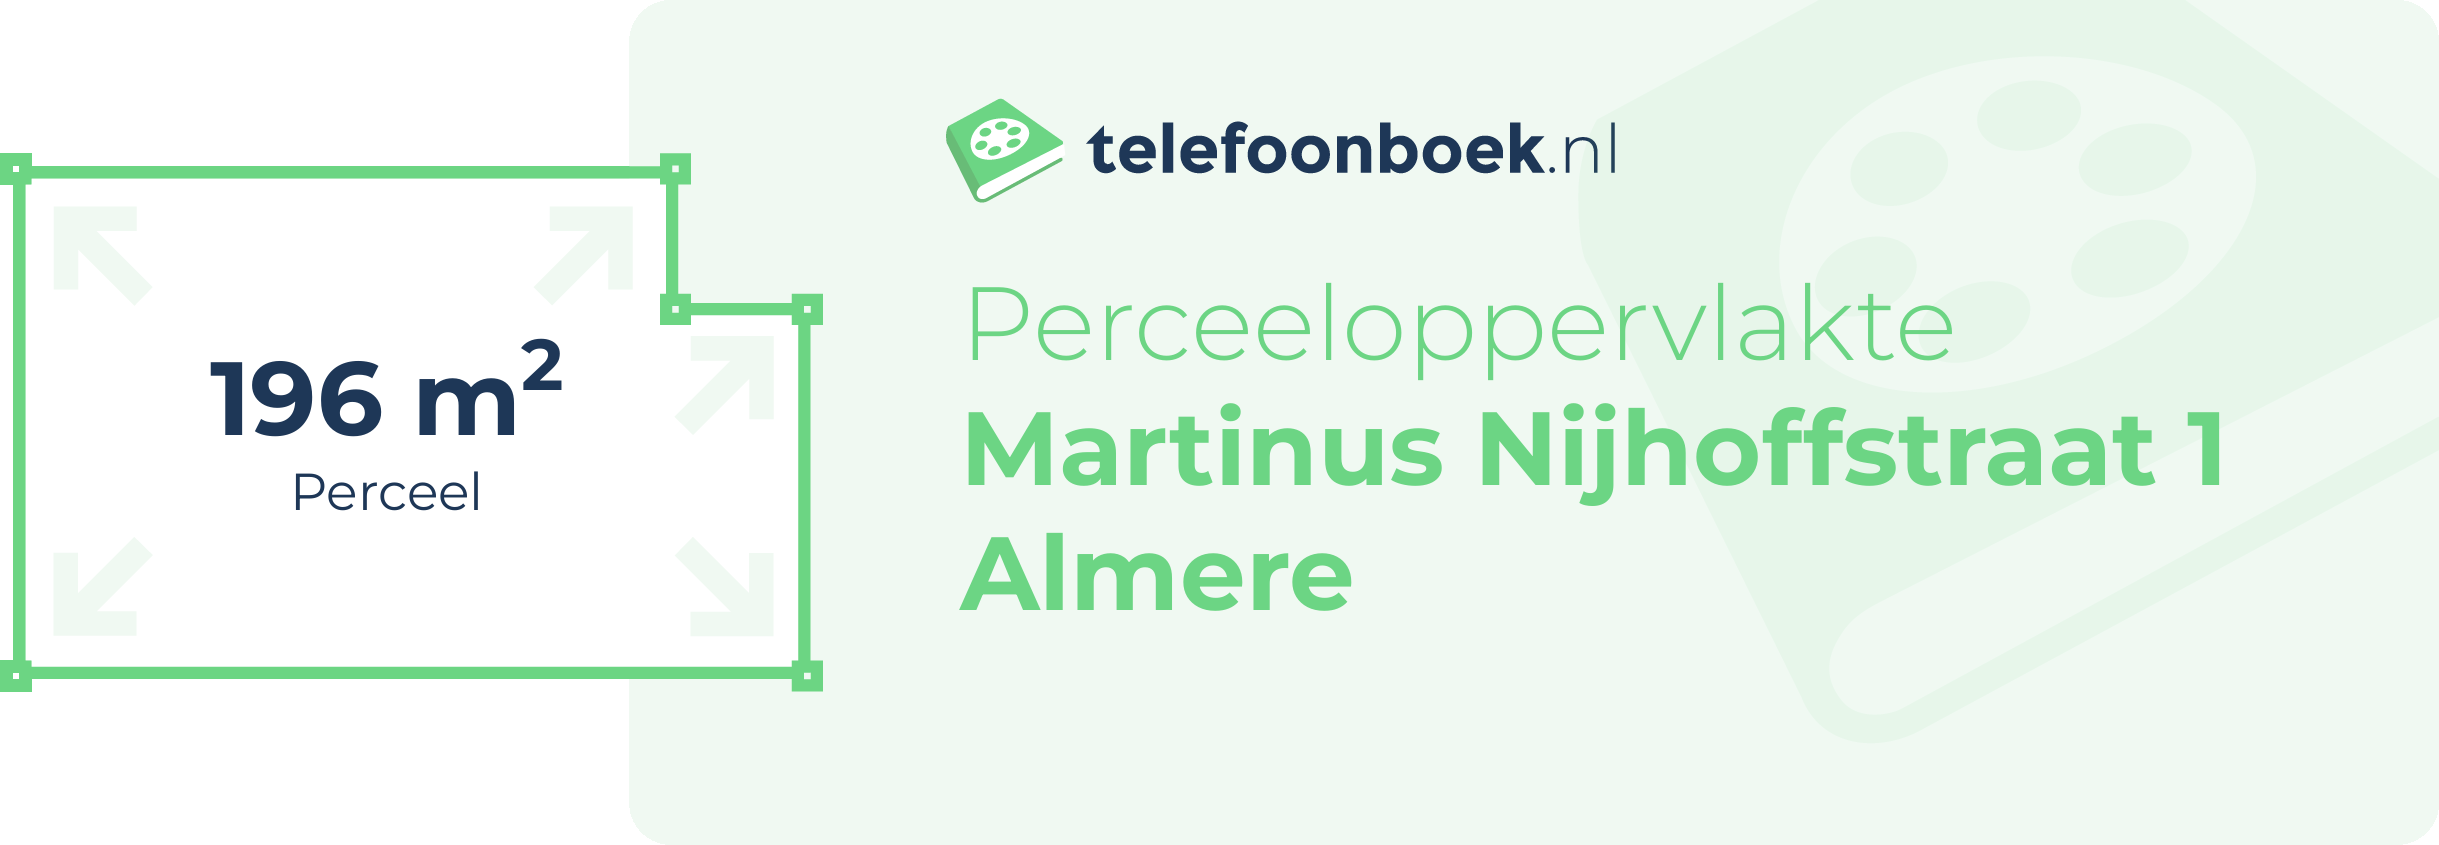 Perceeloppervlakte Martinus Nijhoffstraat 1 Almere